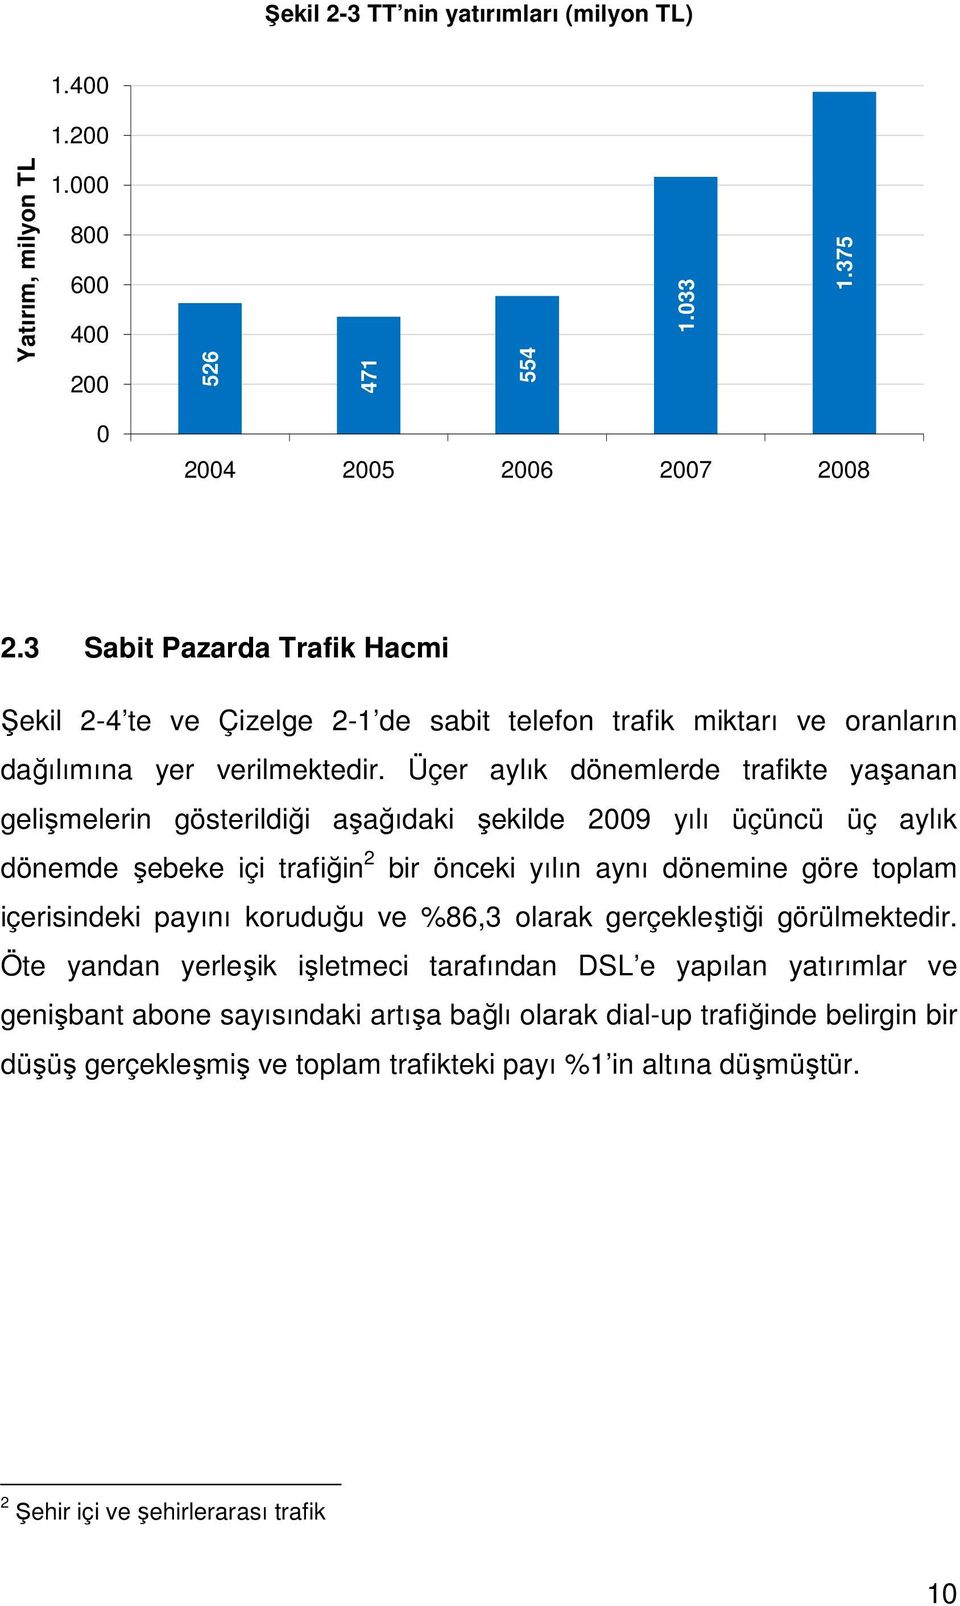 Üçer aylık dönemlerde trafikte yaşanan gelişmelerin gösterildiği aşağıdaki şekilde 2009 yılı üçüncü üç aylık dönemde şebeke içi trafiğin 2 bir önceki yılın aynı dönemine göre toplam içerisindeki